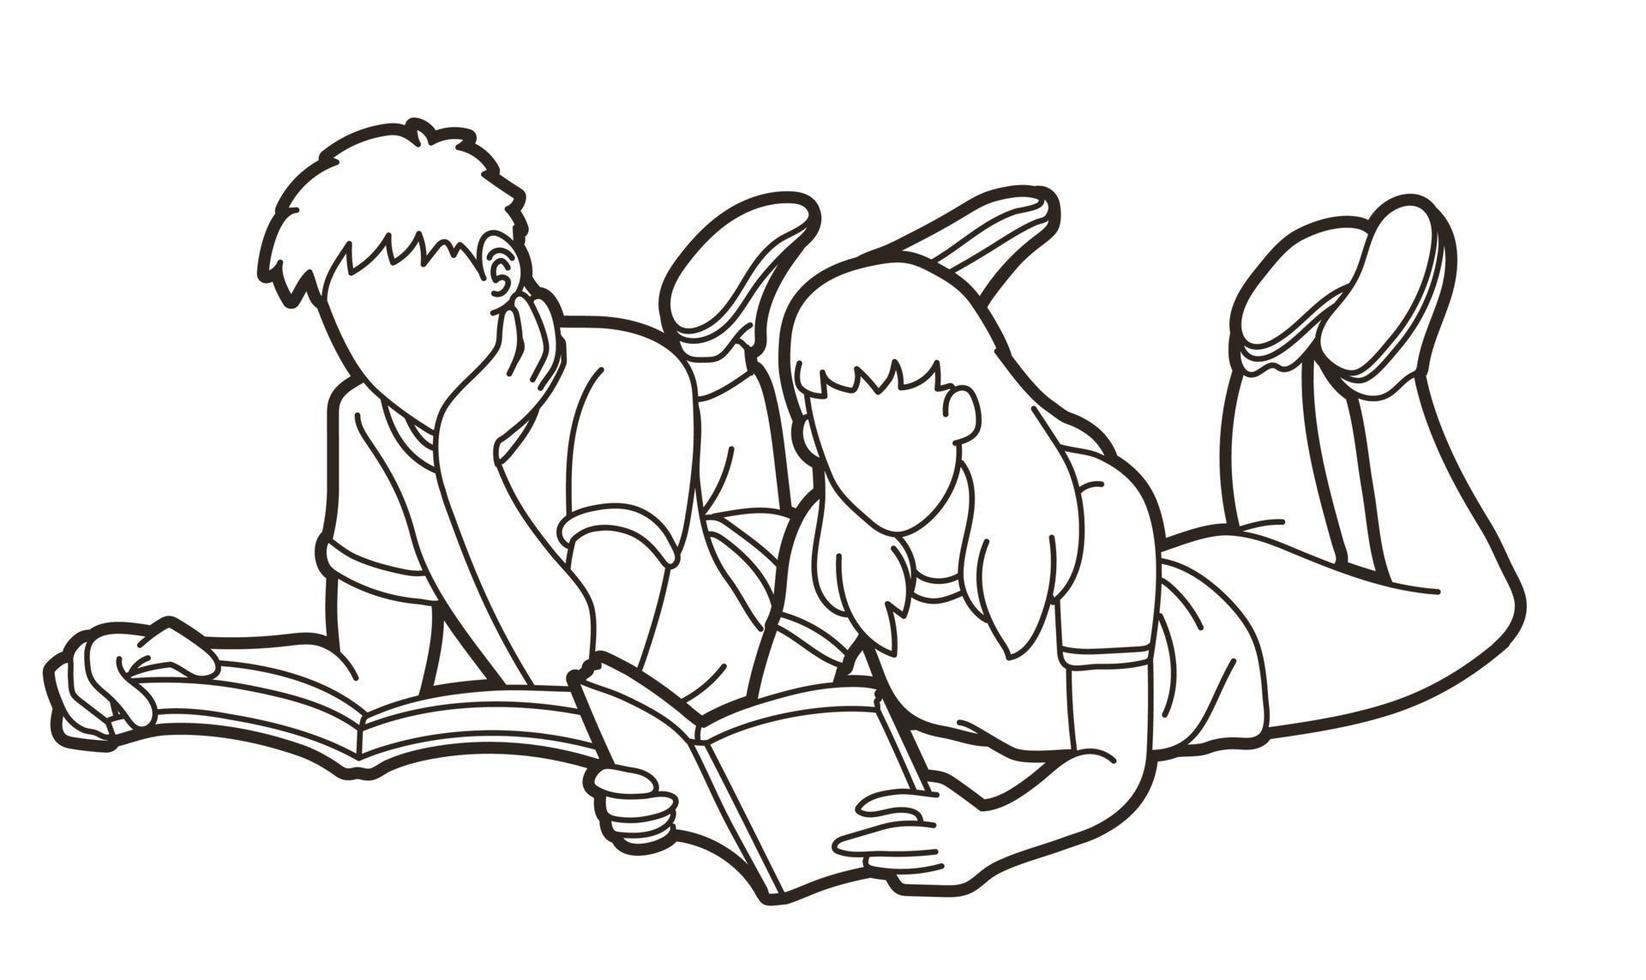 Jugendliche lesen gemeinsam Bücher vektor